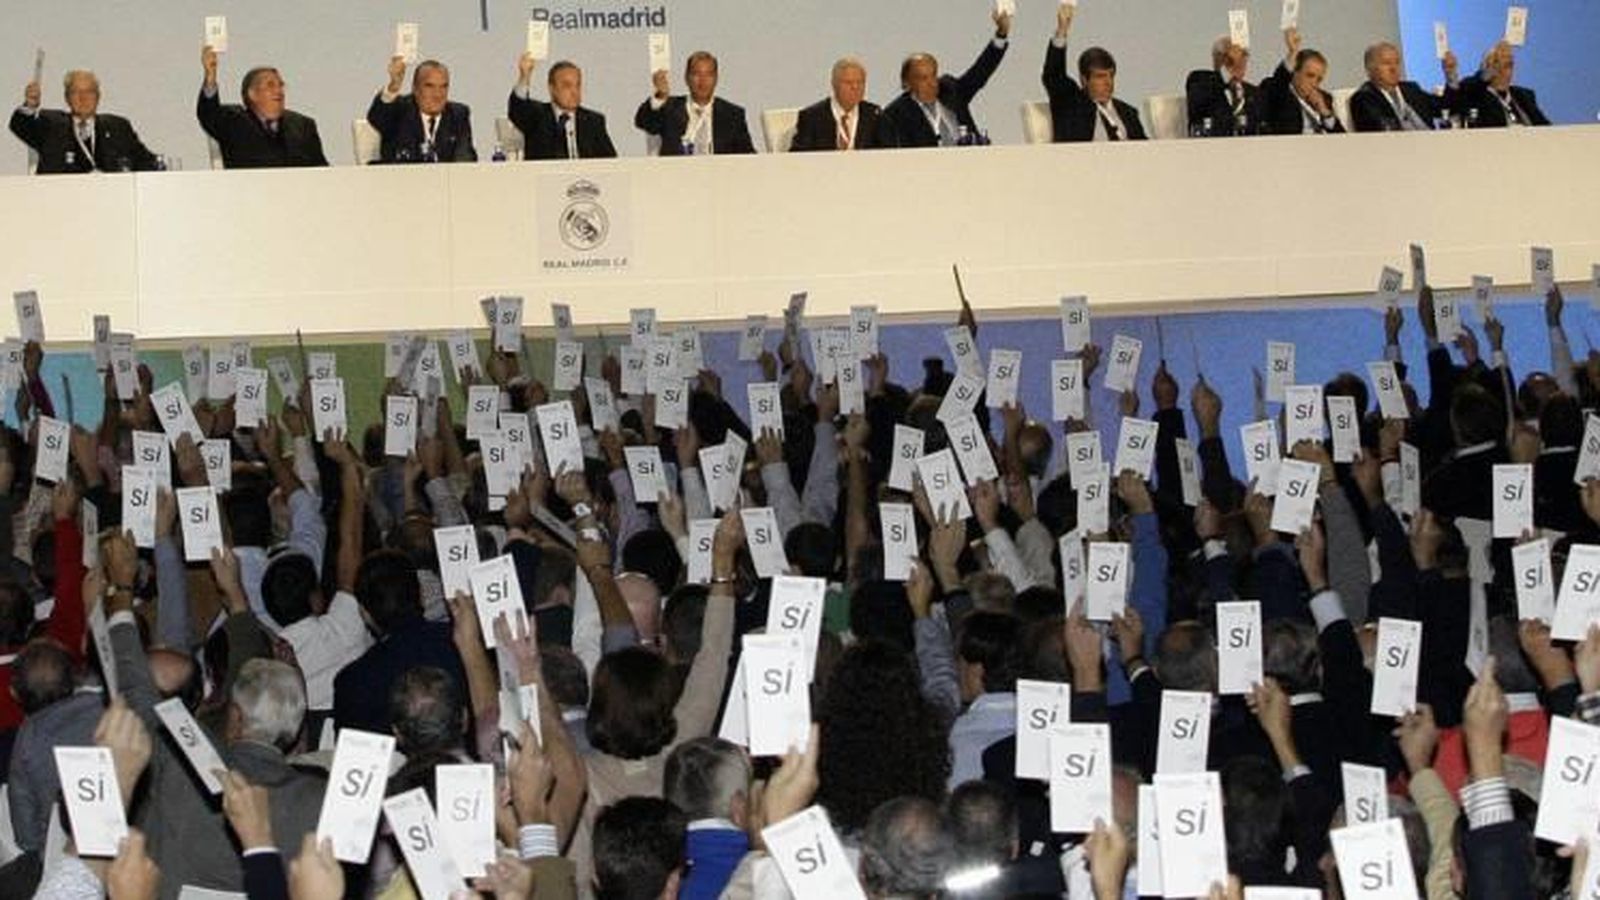 Foto: Imagen de una votación durante una Asamblea del Real Madrid.  